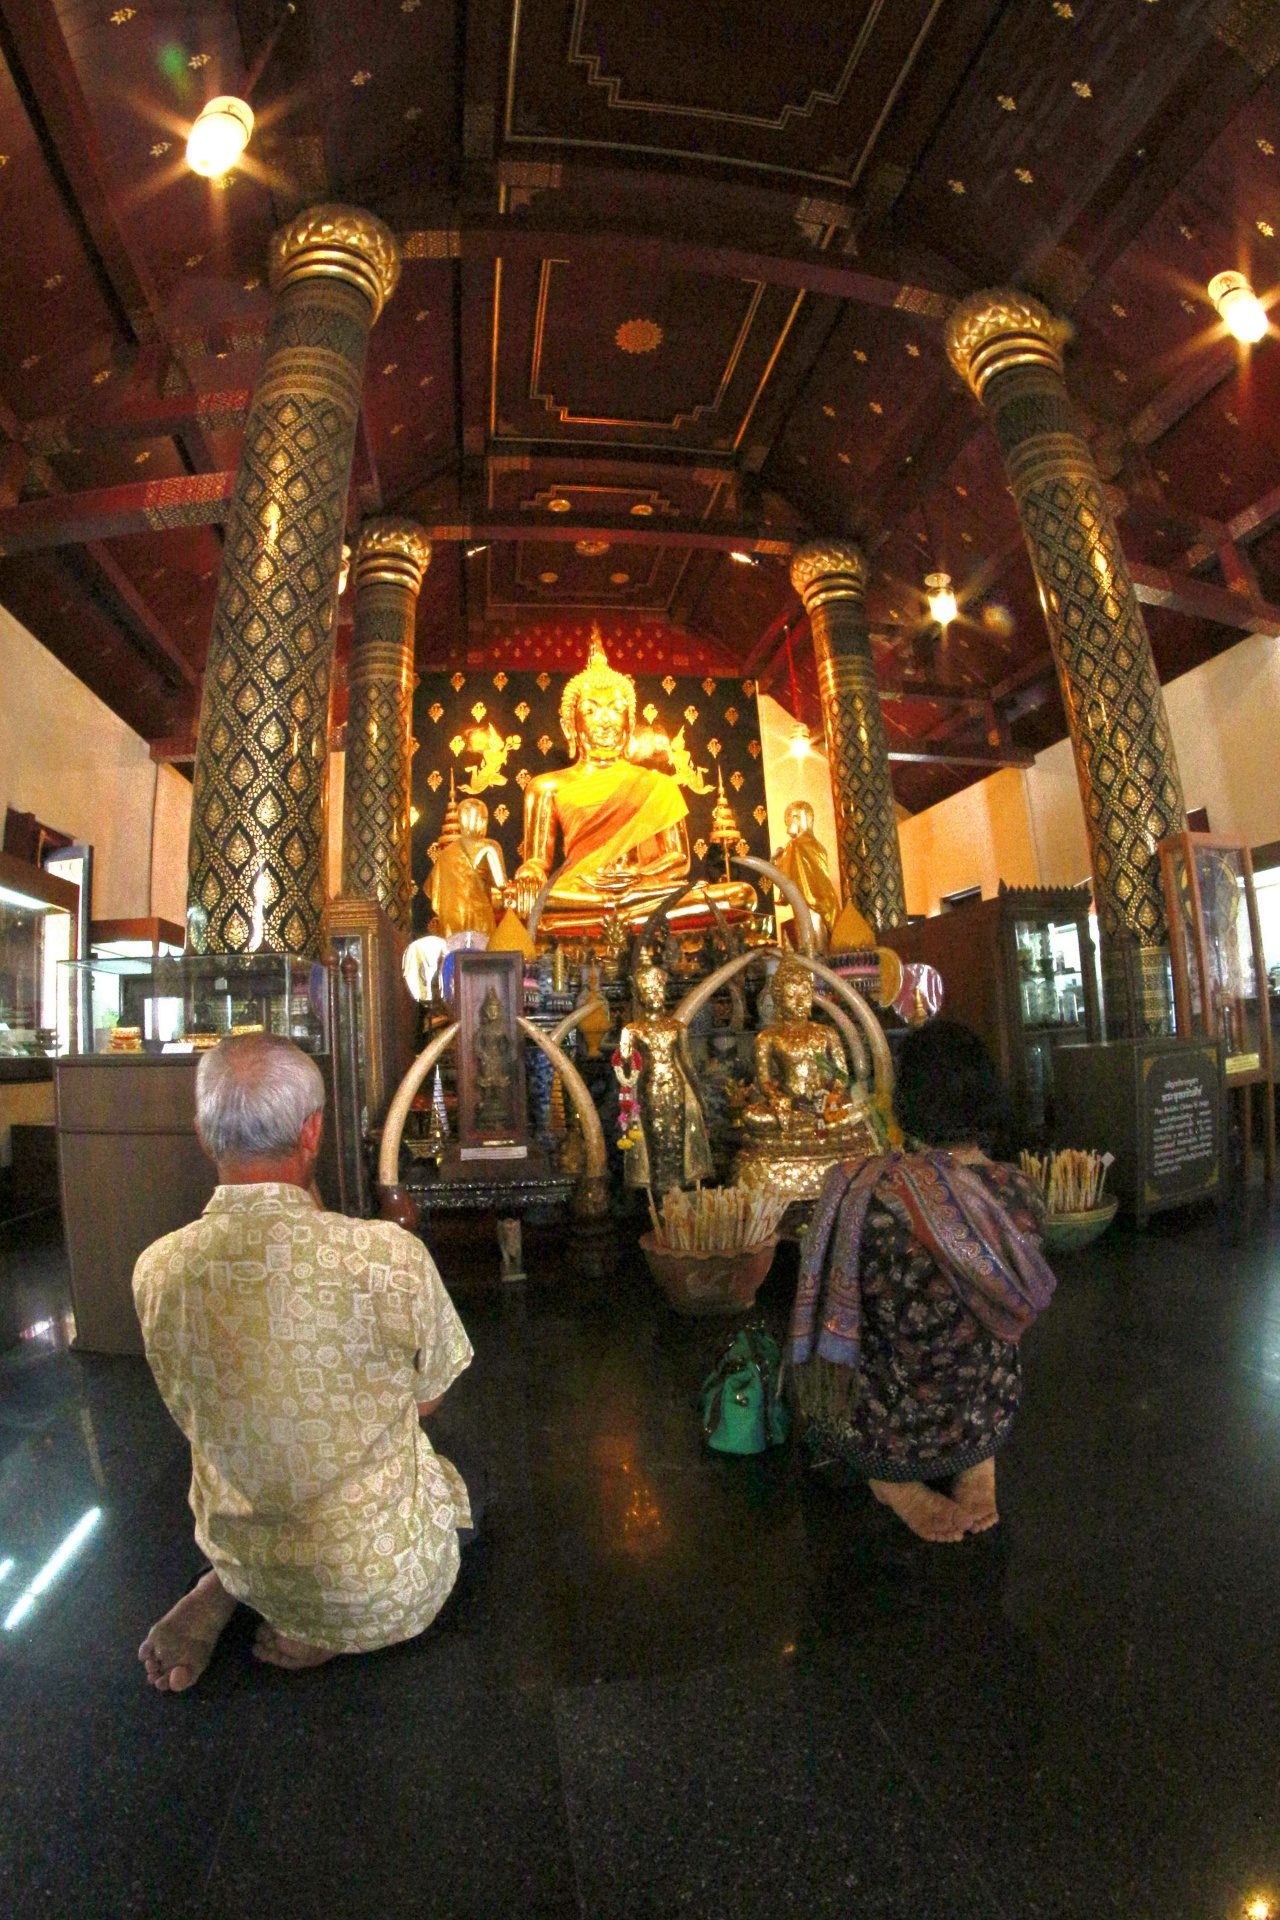 Phra Buda Chinnarat Wat Phra